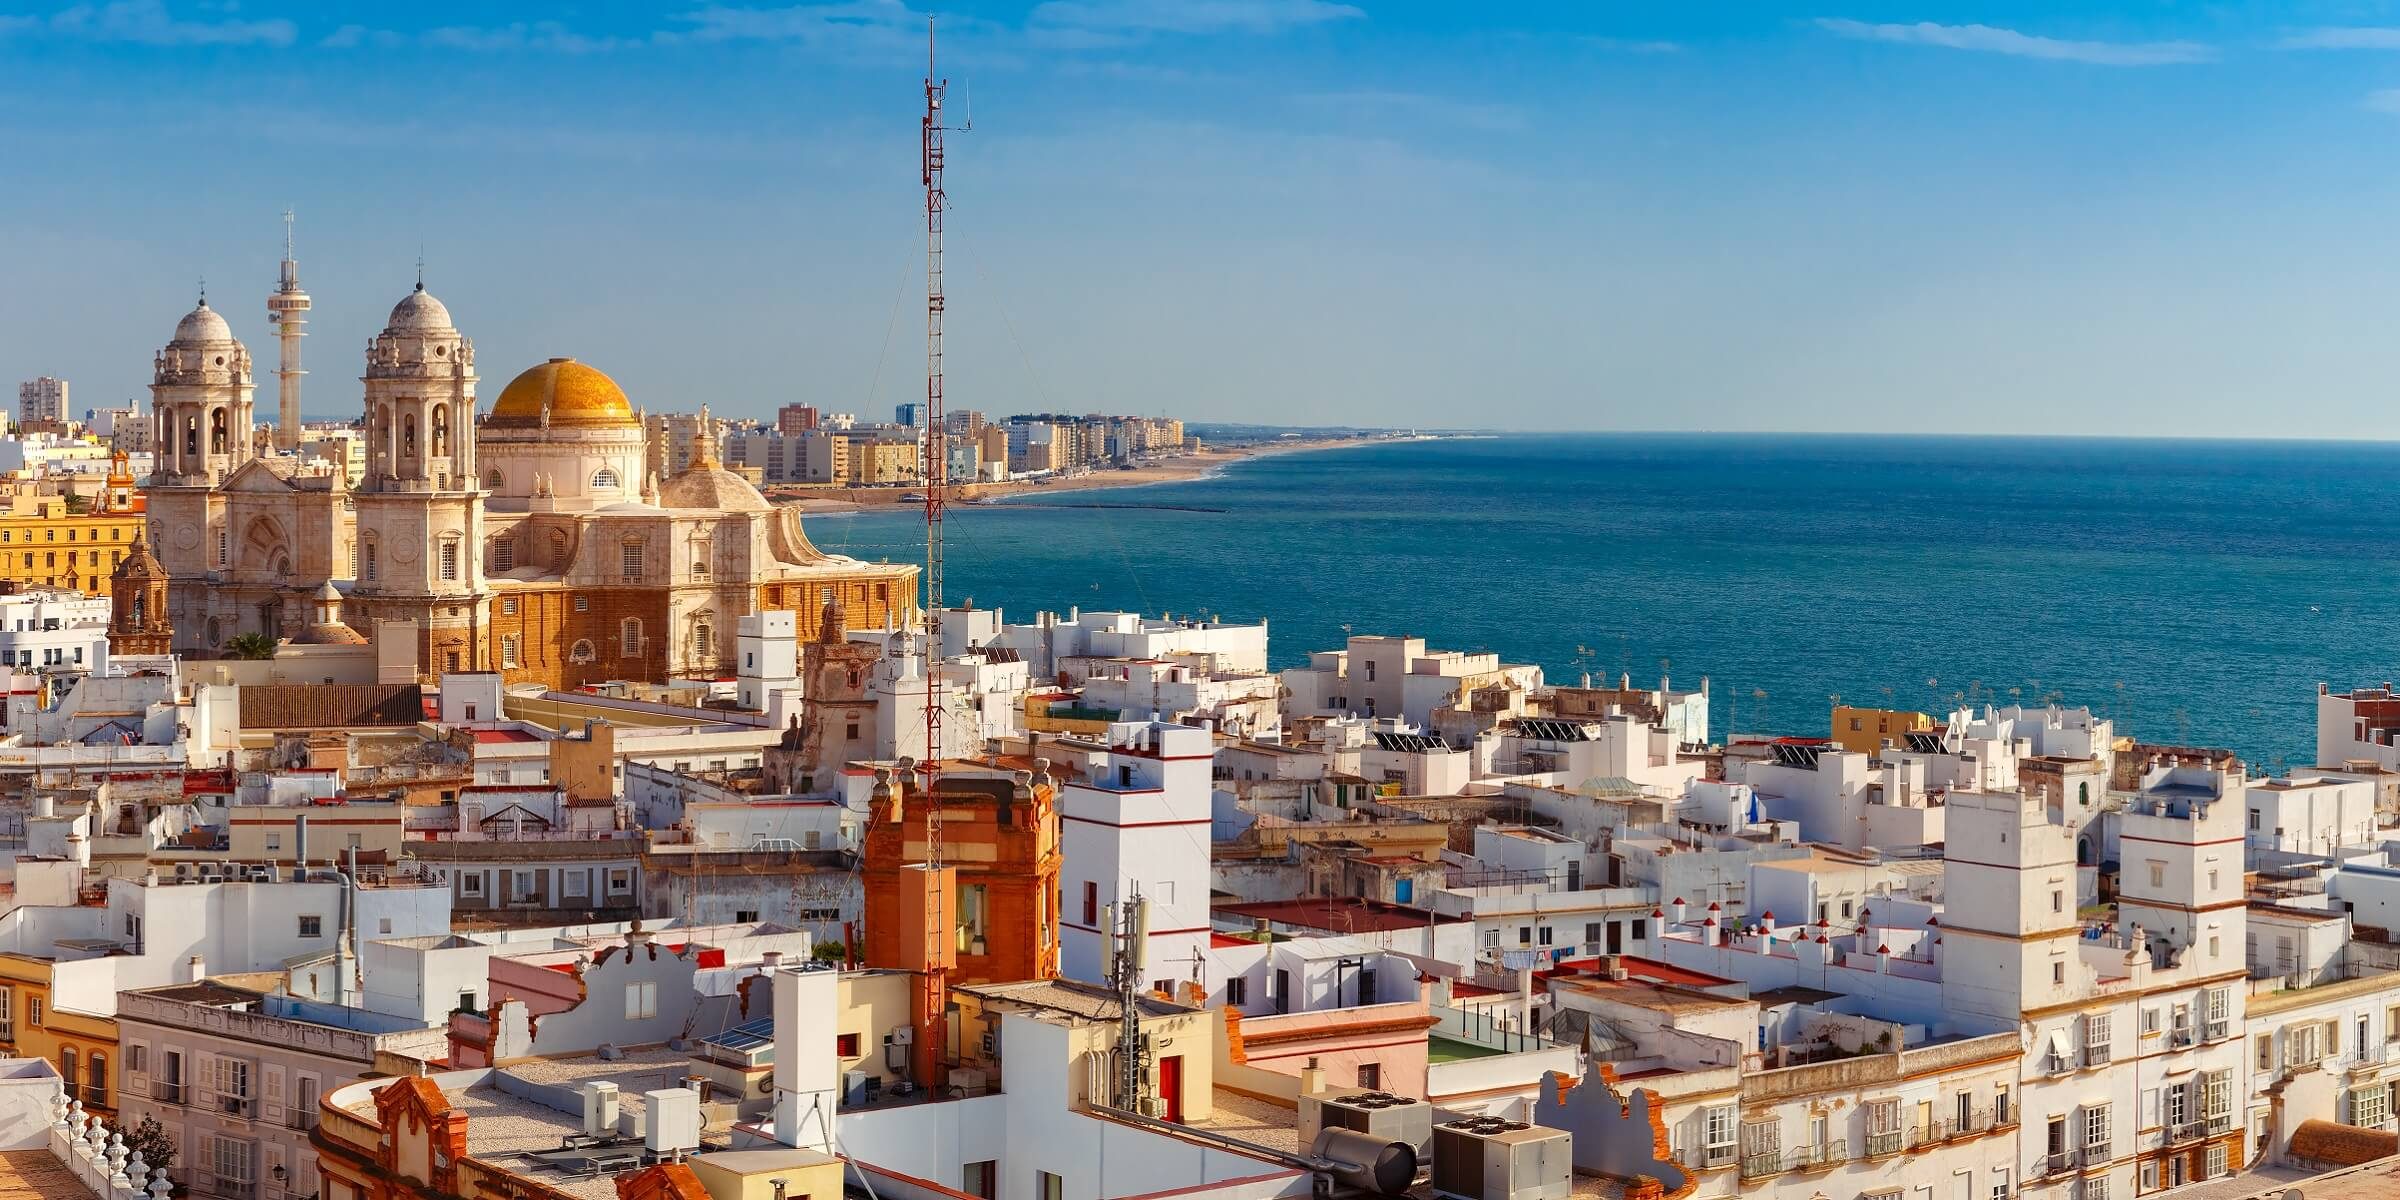 Cadiz die älteste Stadt Europas, deren Altstadt von drei Seiten vom Meer umschlossen ist.